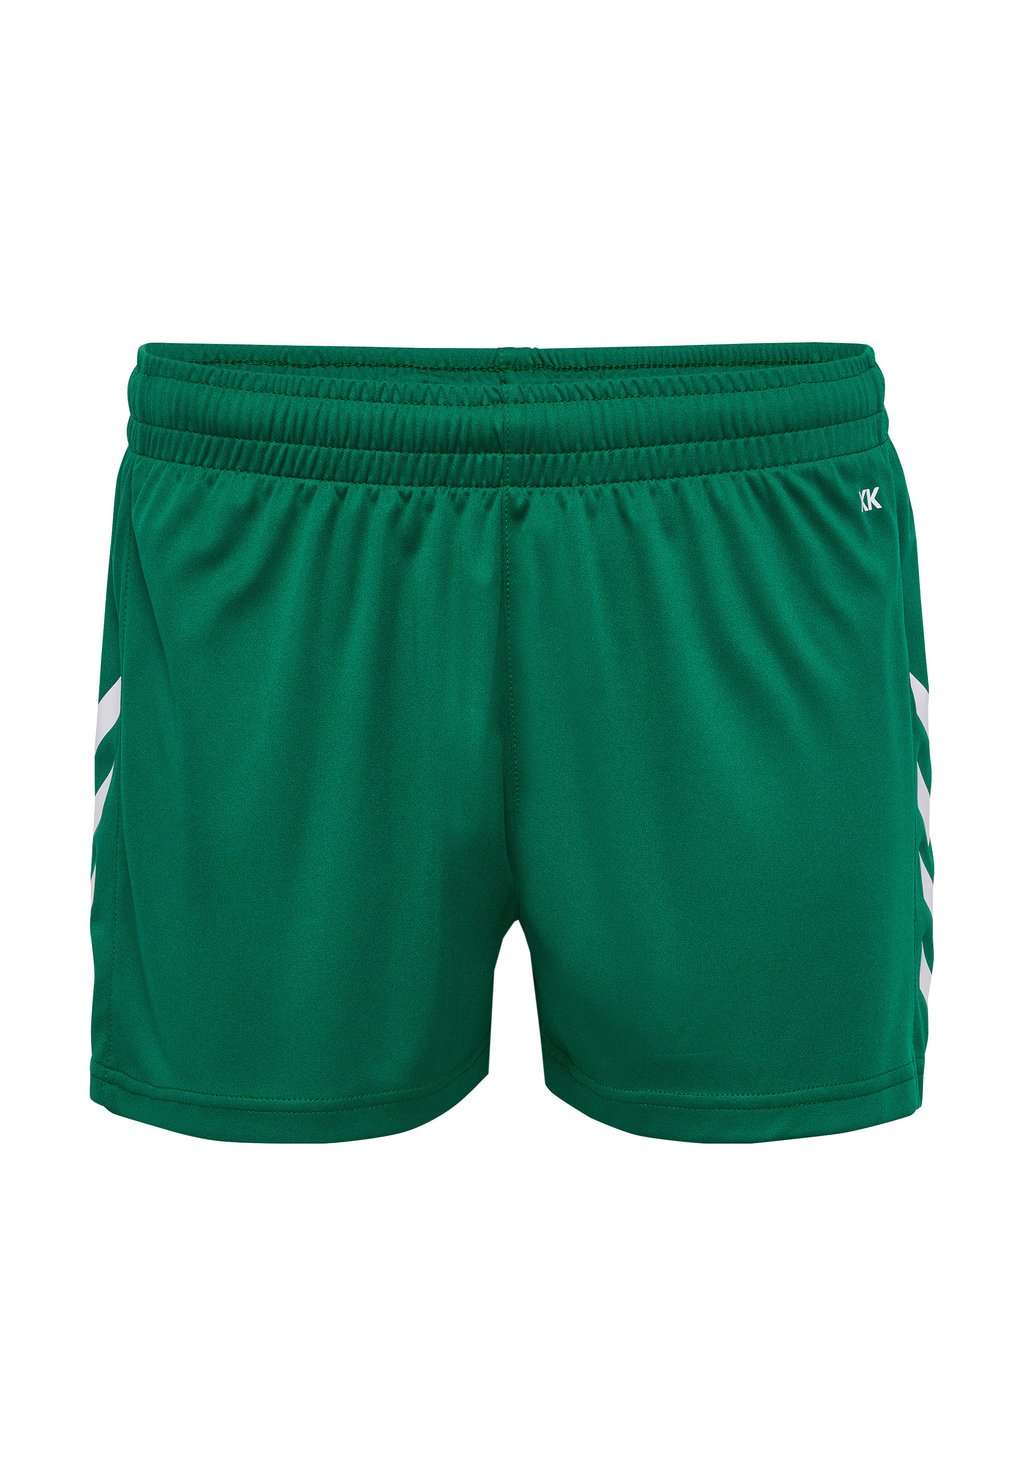 Спортивные шорты CORE XK POLY Hummel, цвет evergreen спортивные шорты core xk poly hummel цвет acai